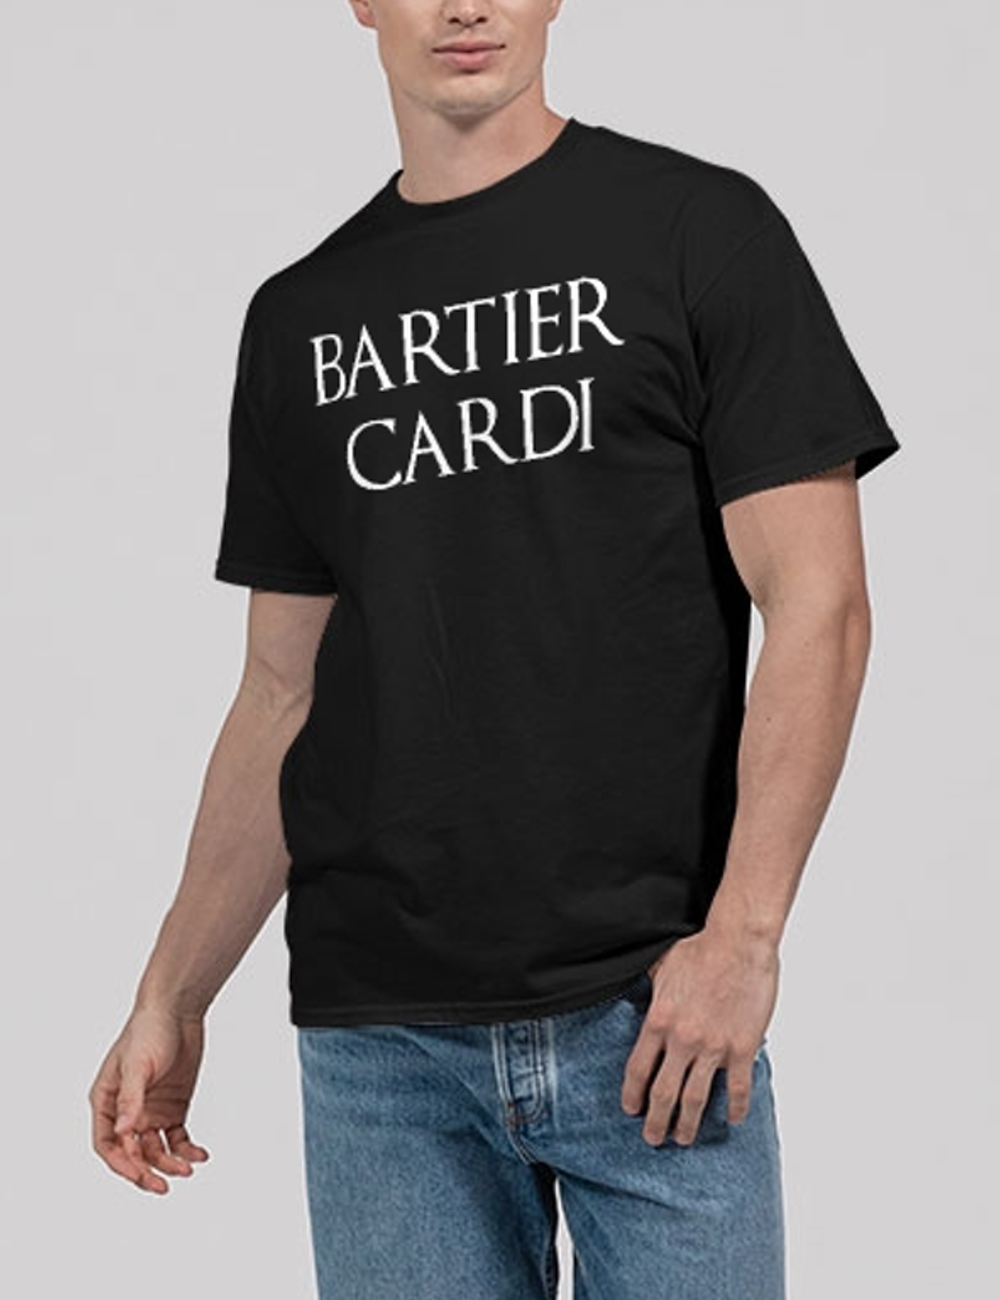 Bartier Cardi Men's Classic T-Shirt OniTakai